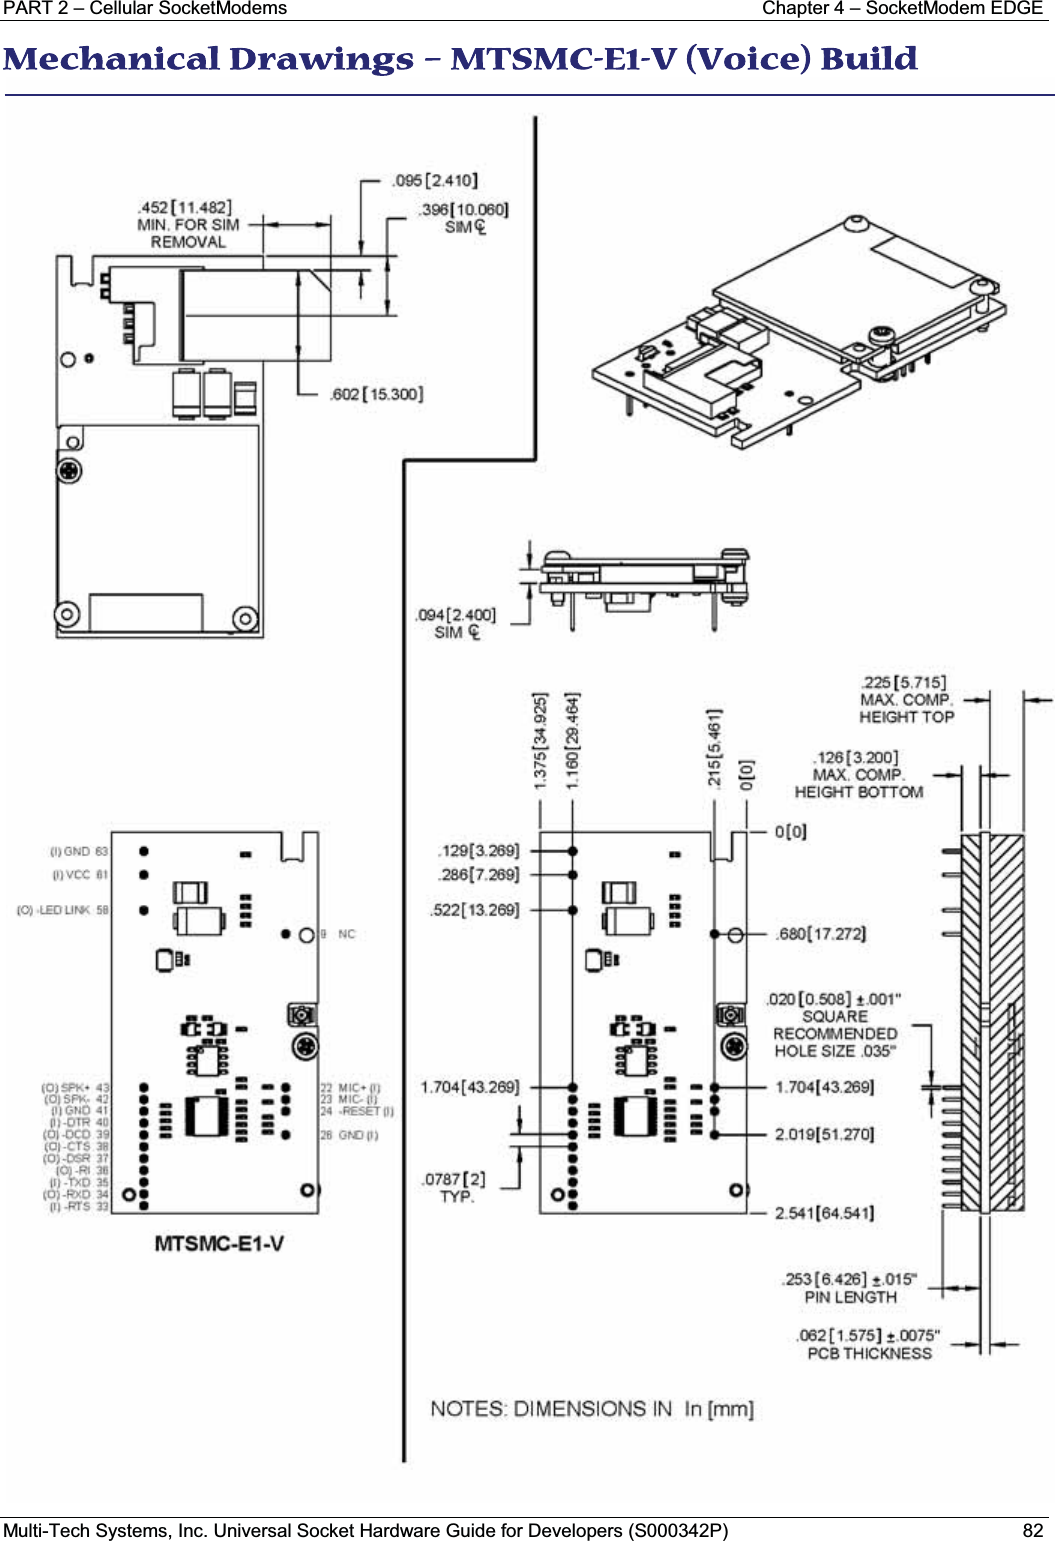 PART 2 – Cellular SocketModems Chapter 4 – SocketModem EDGEMulti-Tech Systems, Inc. Universal Socket Hardware Guide for Developers (S000342P) 82MMechanical Drawings – MTSMC-E1-V (Voice) Build